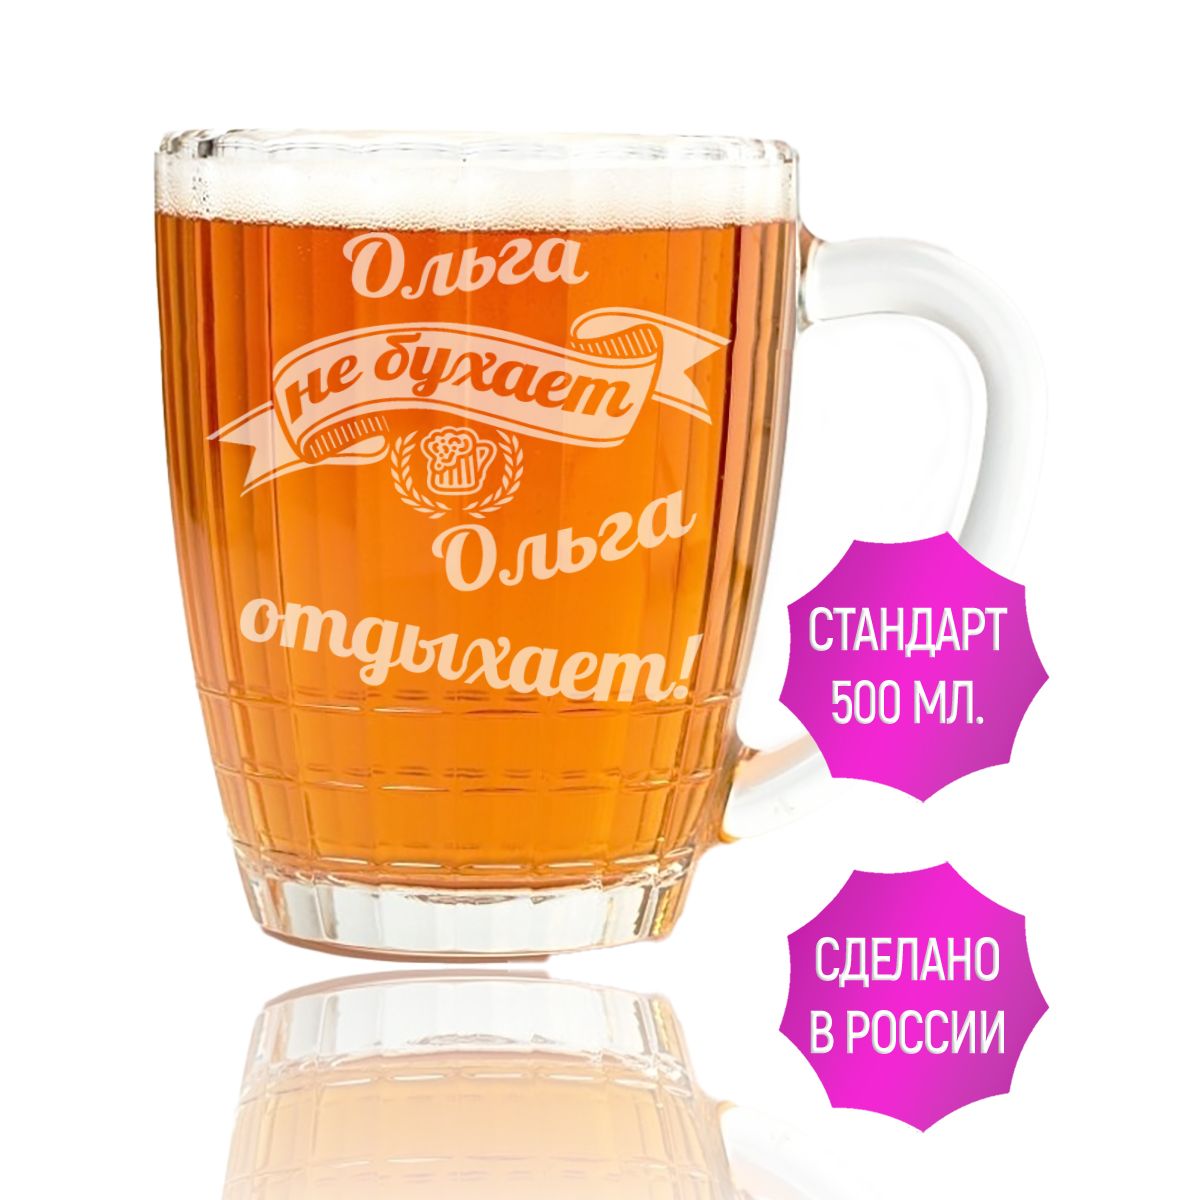 Бокал для пива AV Podarki Ольга не бухает Ольга отдыхает 500 мл.